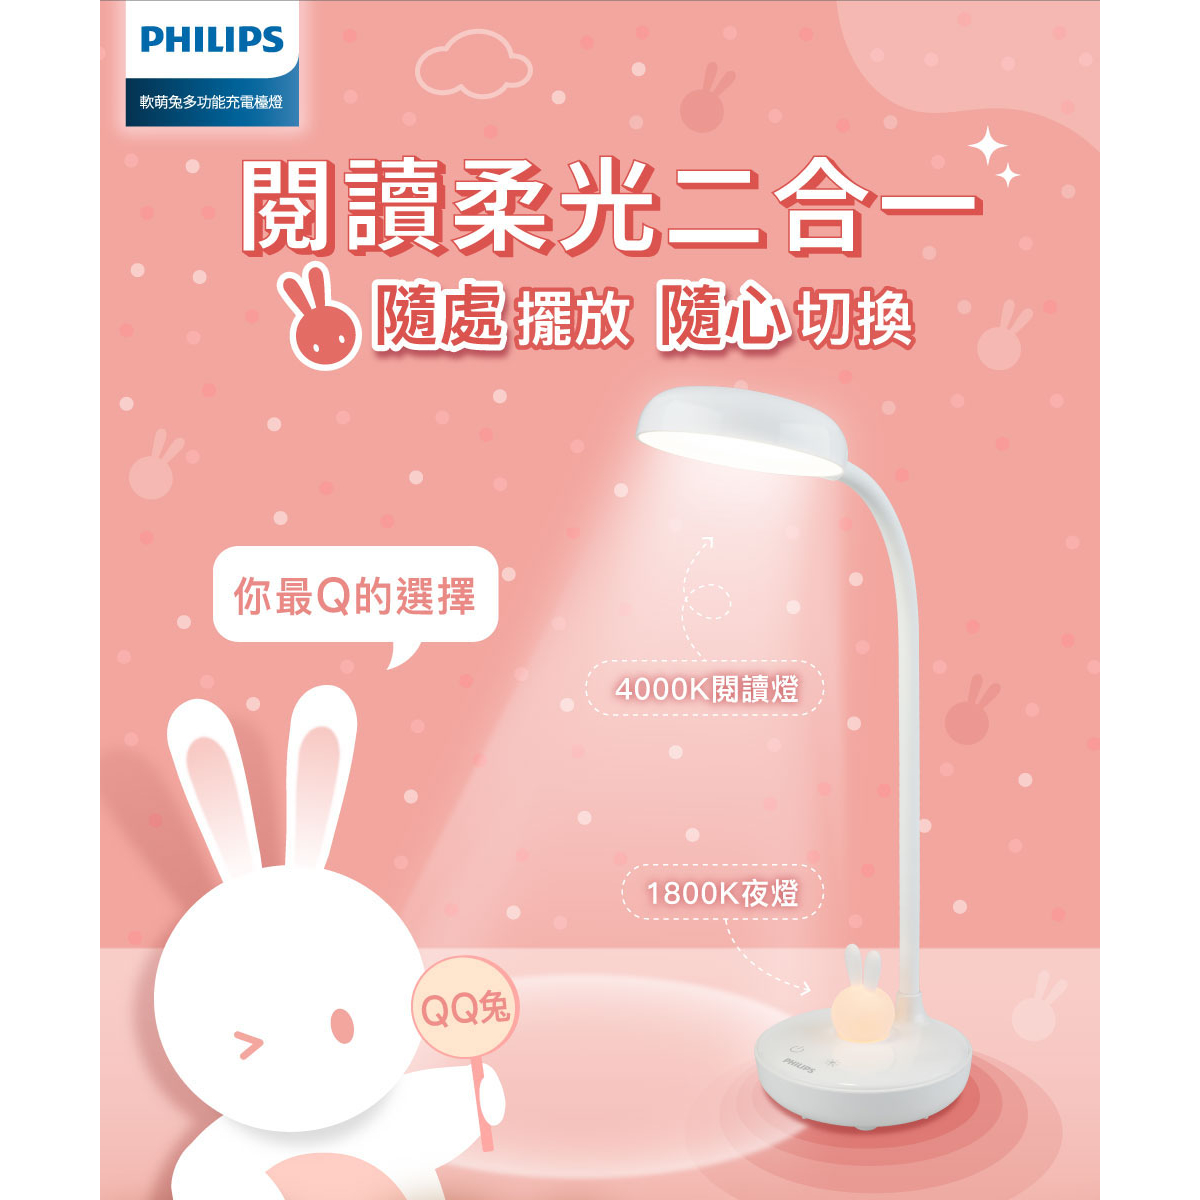 官方專售【Philips 飛利浦】66206 軟萌兔多功能充電檯燈(PD054)